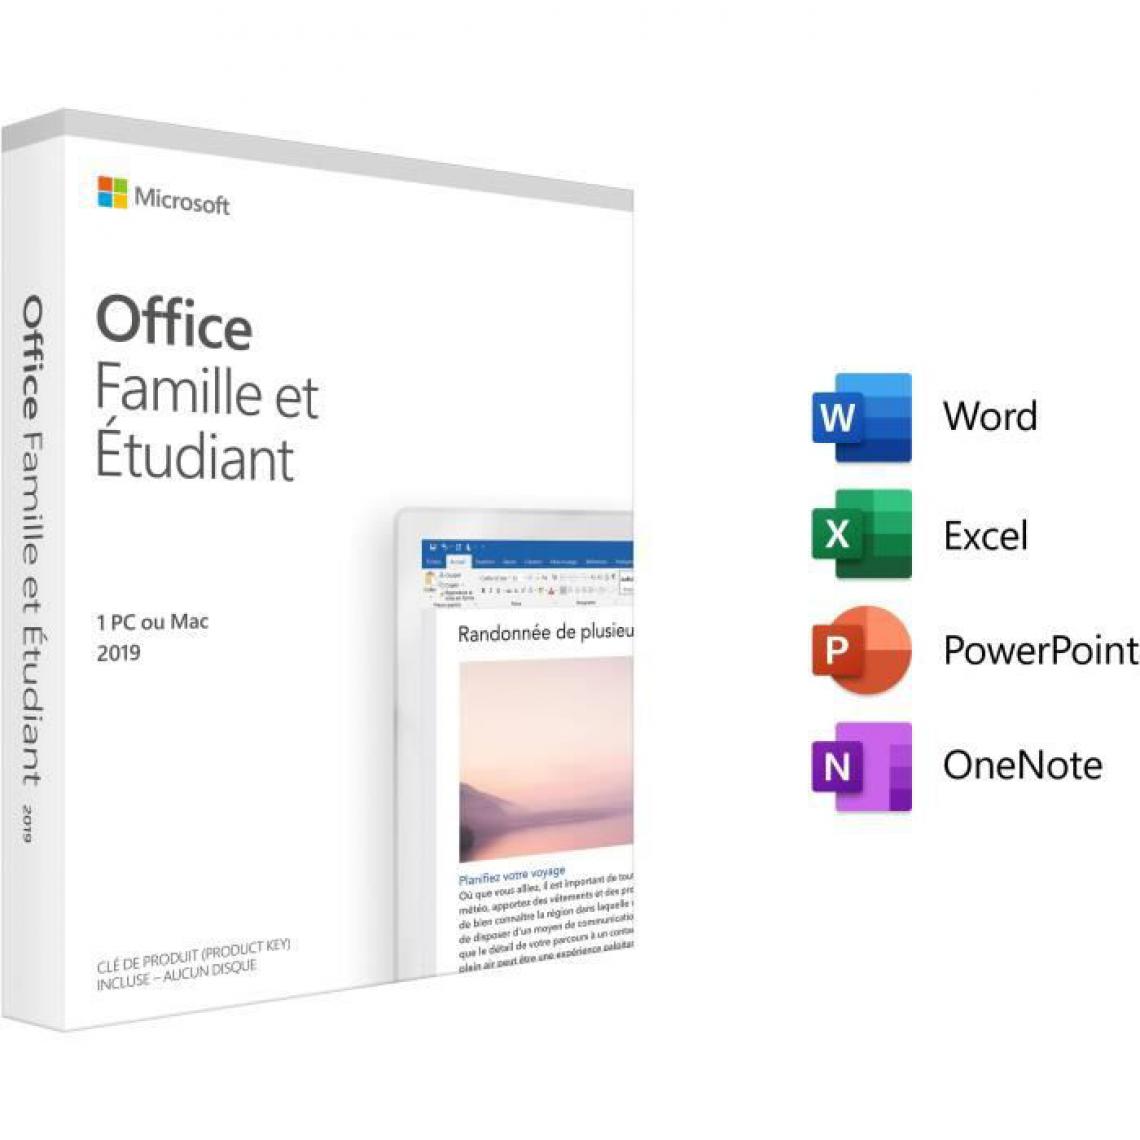 Microsoft - Microsoft Office Famille et Etudiant 2019 - Achat définitif - Correcteurs & Traducteurs